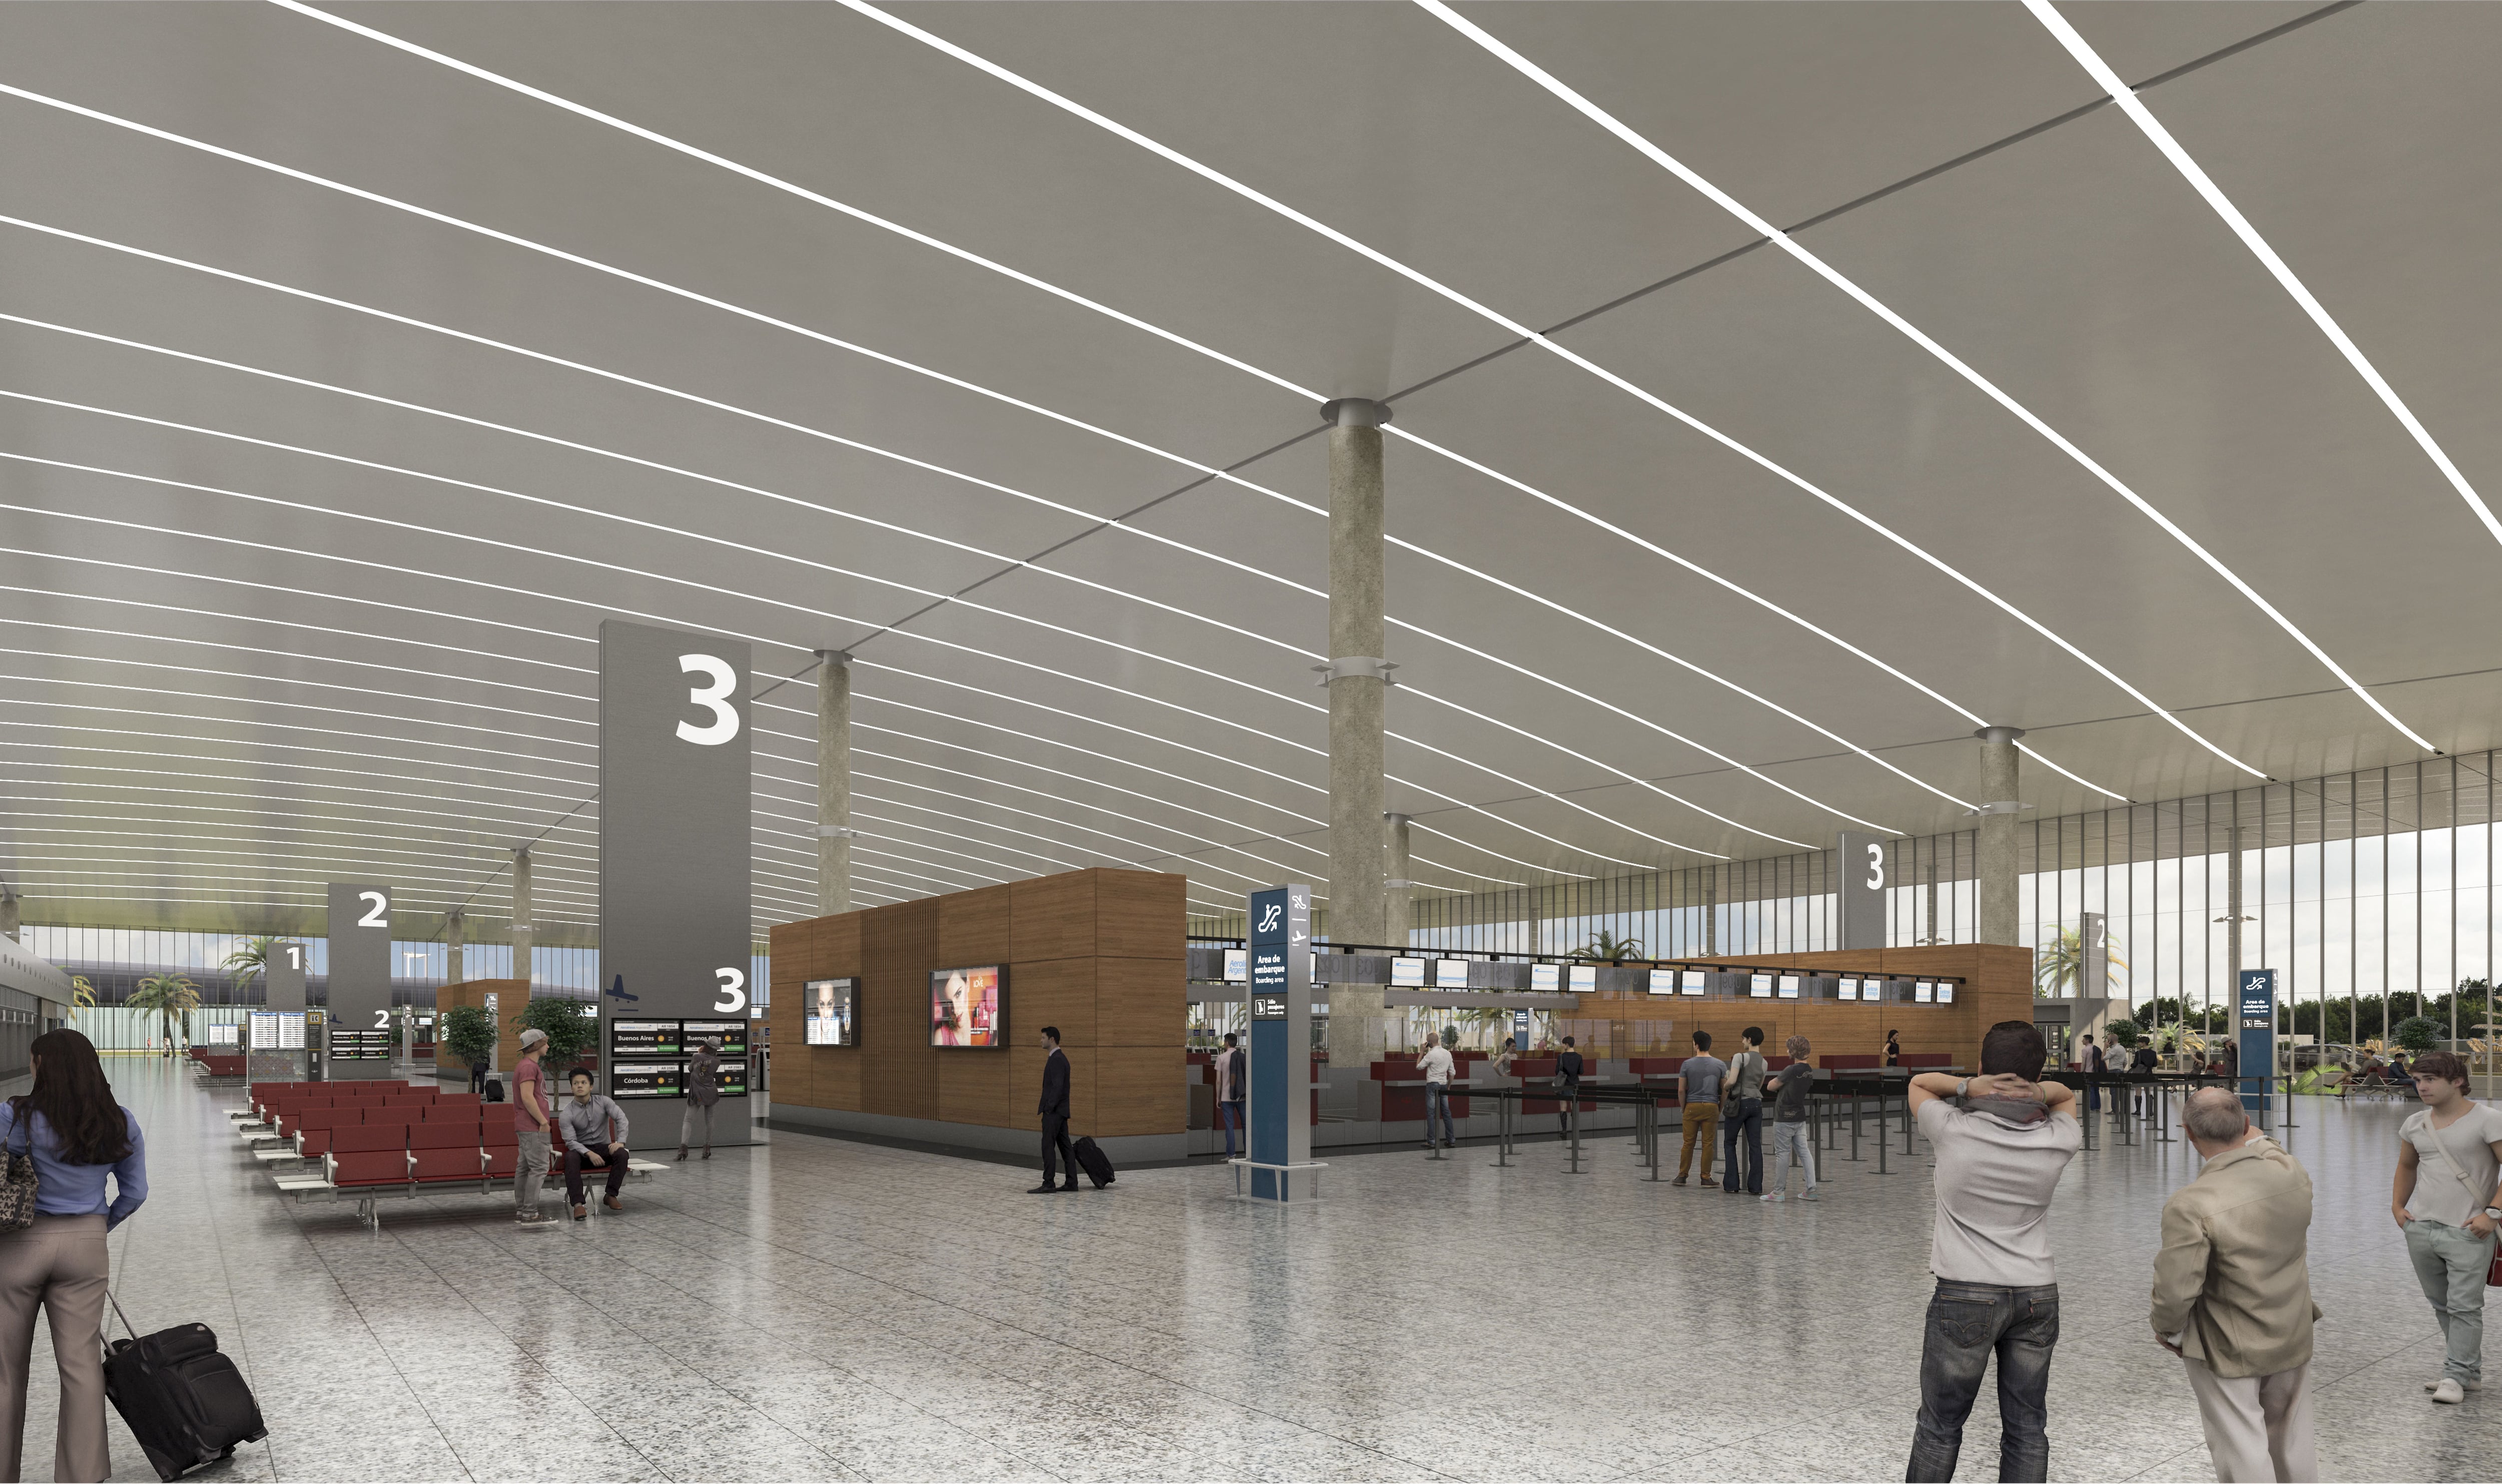 Estas son las últimas imágenes del diseño del aeropuerto que se proyecta para Daular